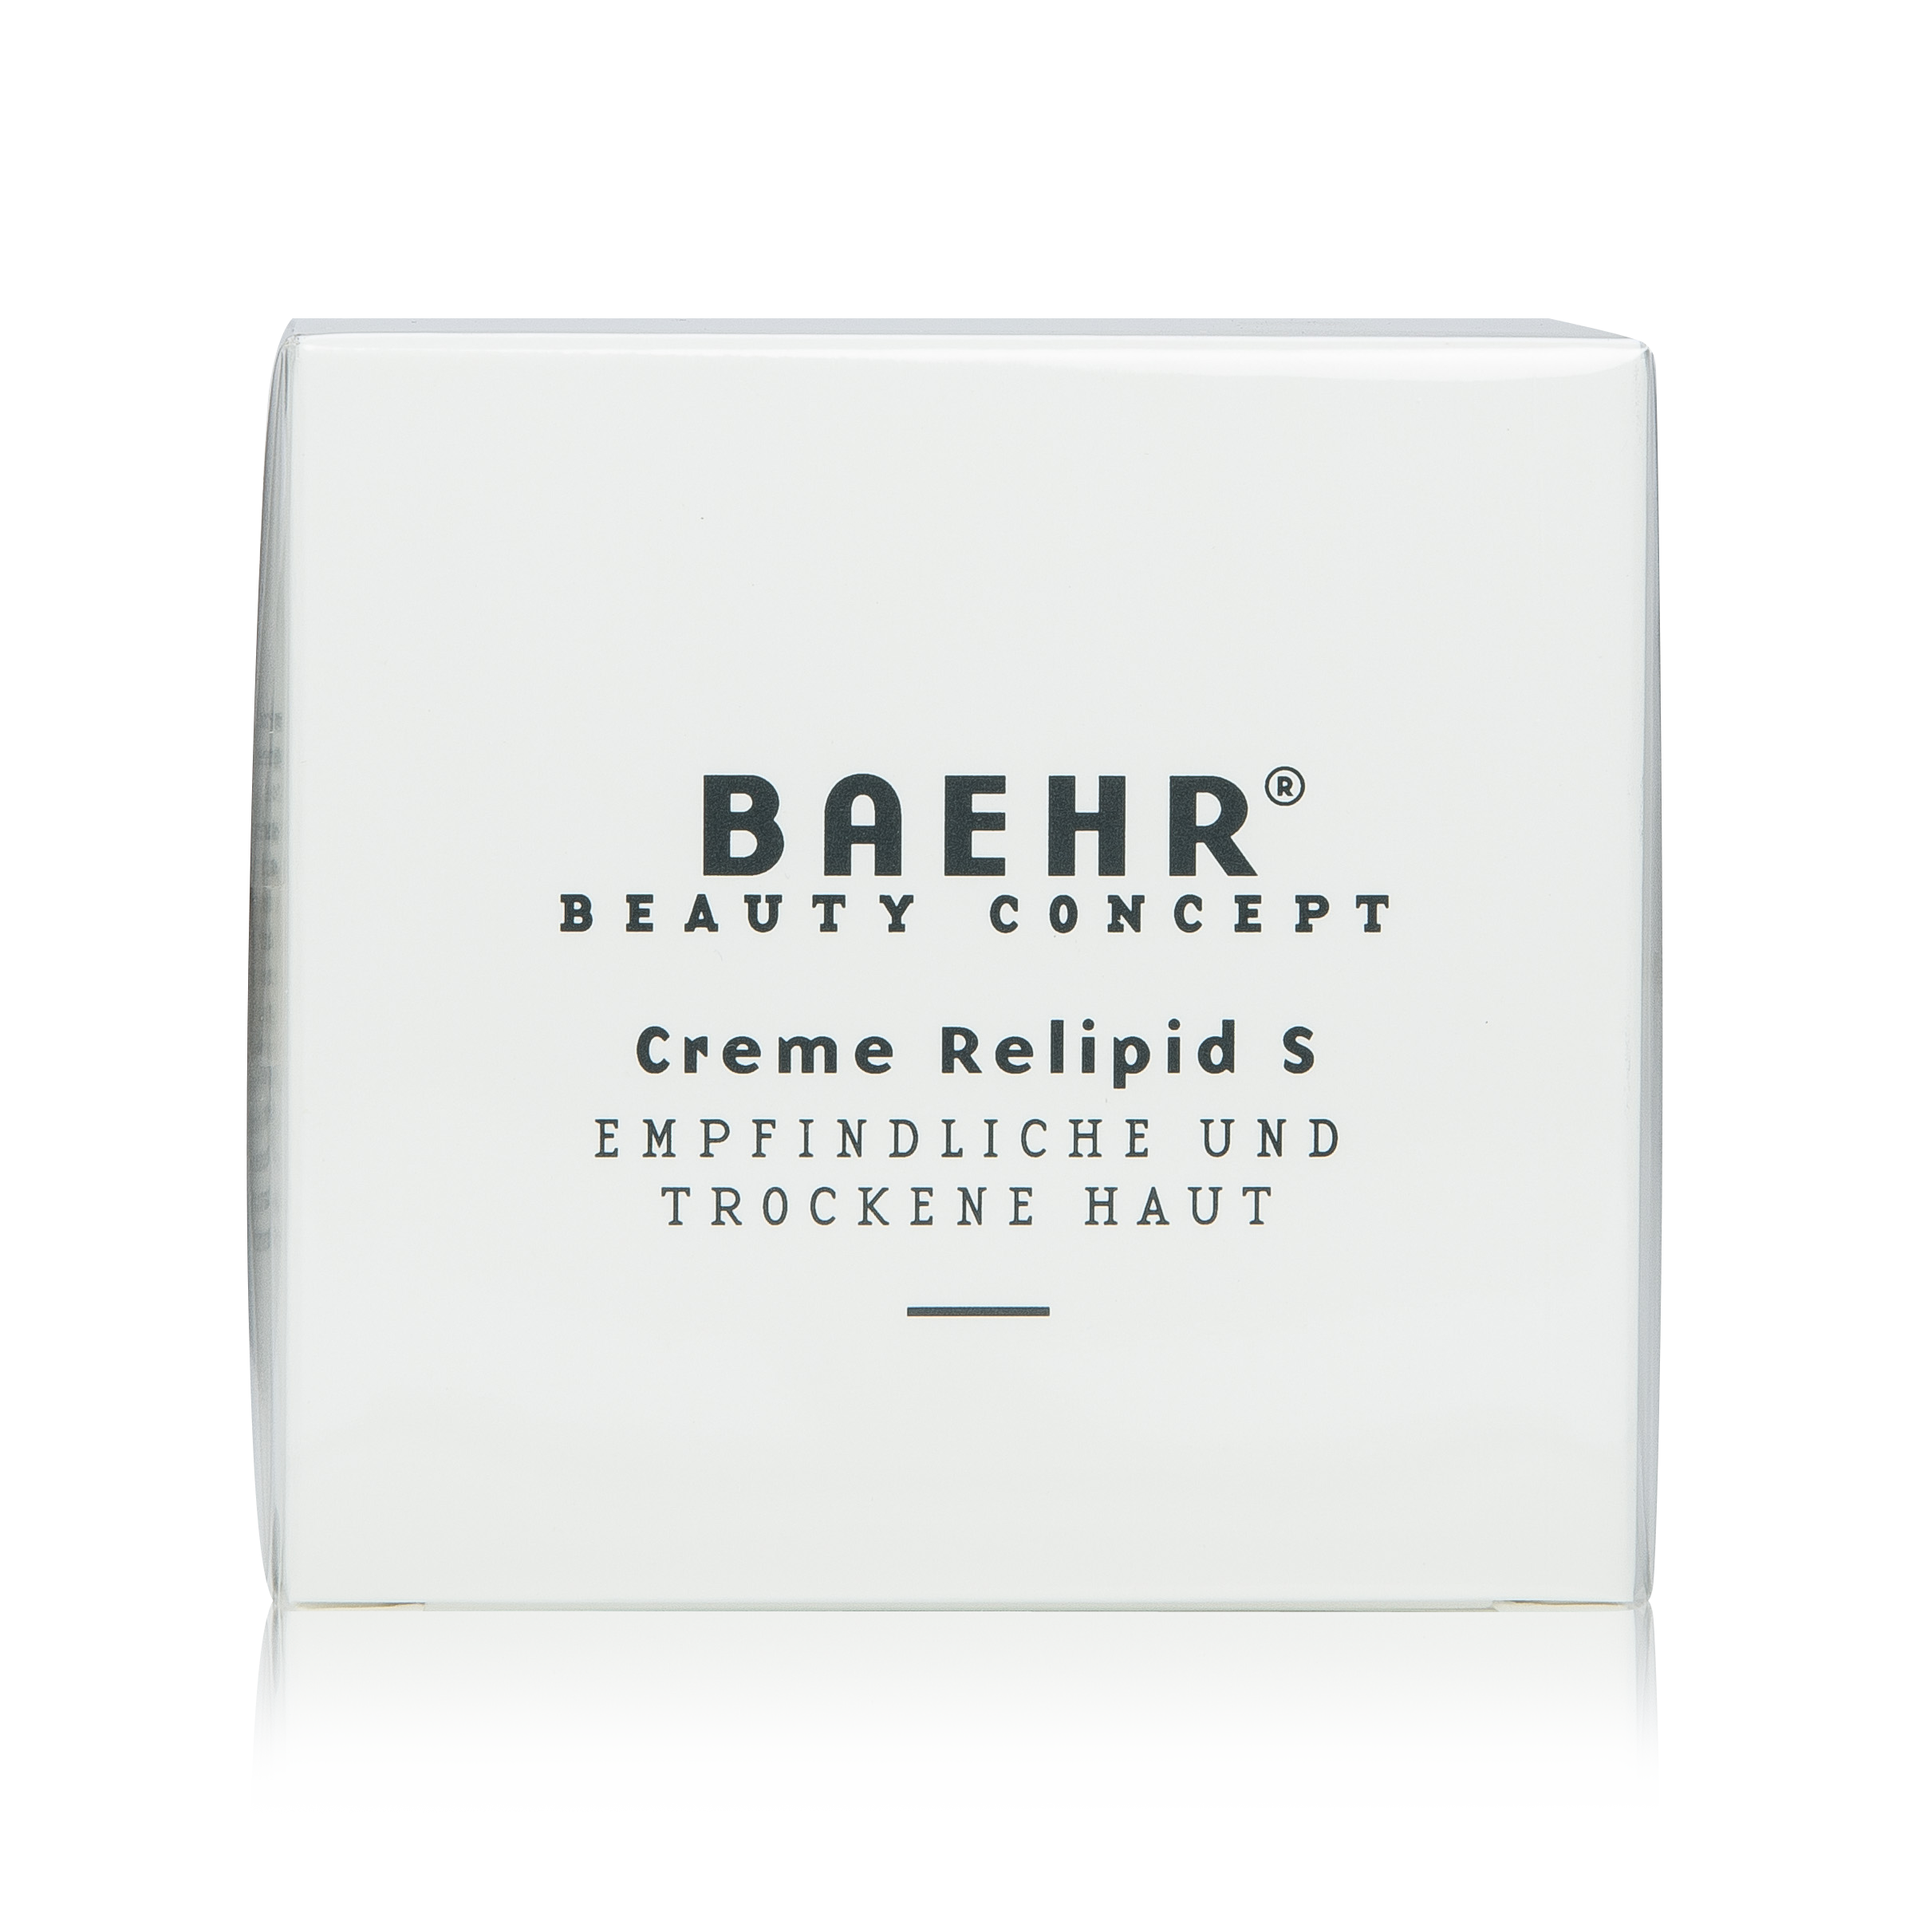 BAEHR BEAUTY CONCEPT Creme reilipid S Tiegel in Schachtel 50 ml